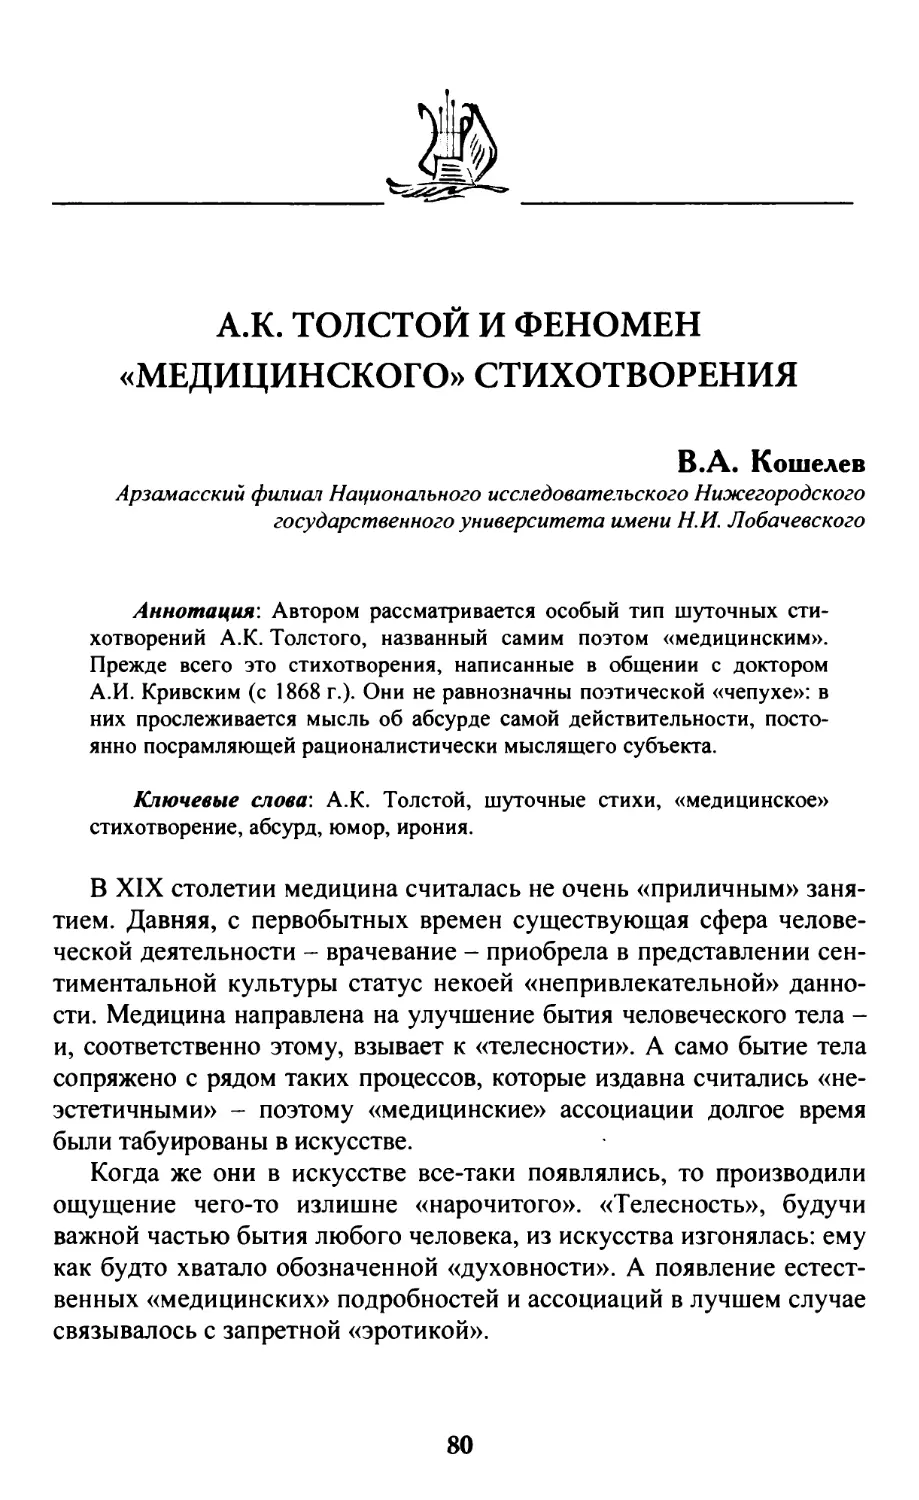 Кошелев В.А. А.К. Толстой и феномен «медицинского» стихотворения